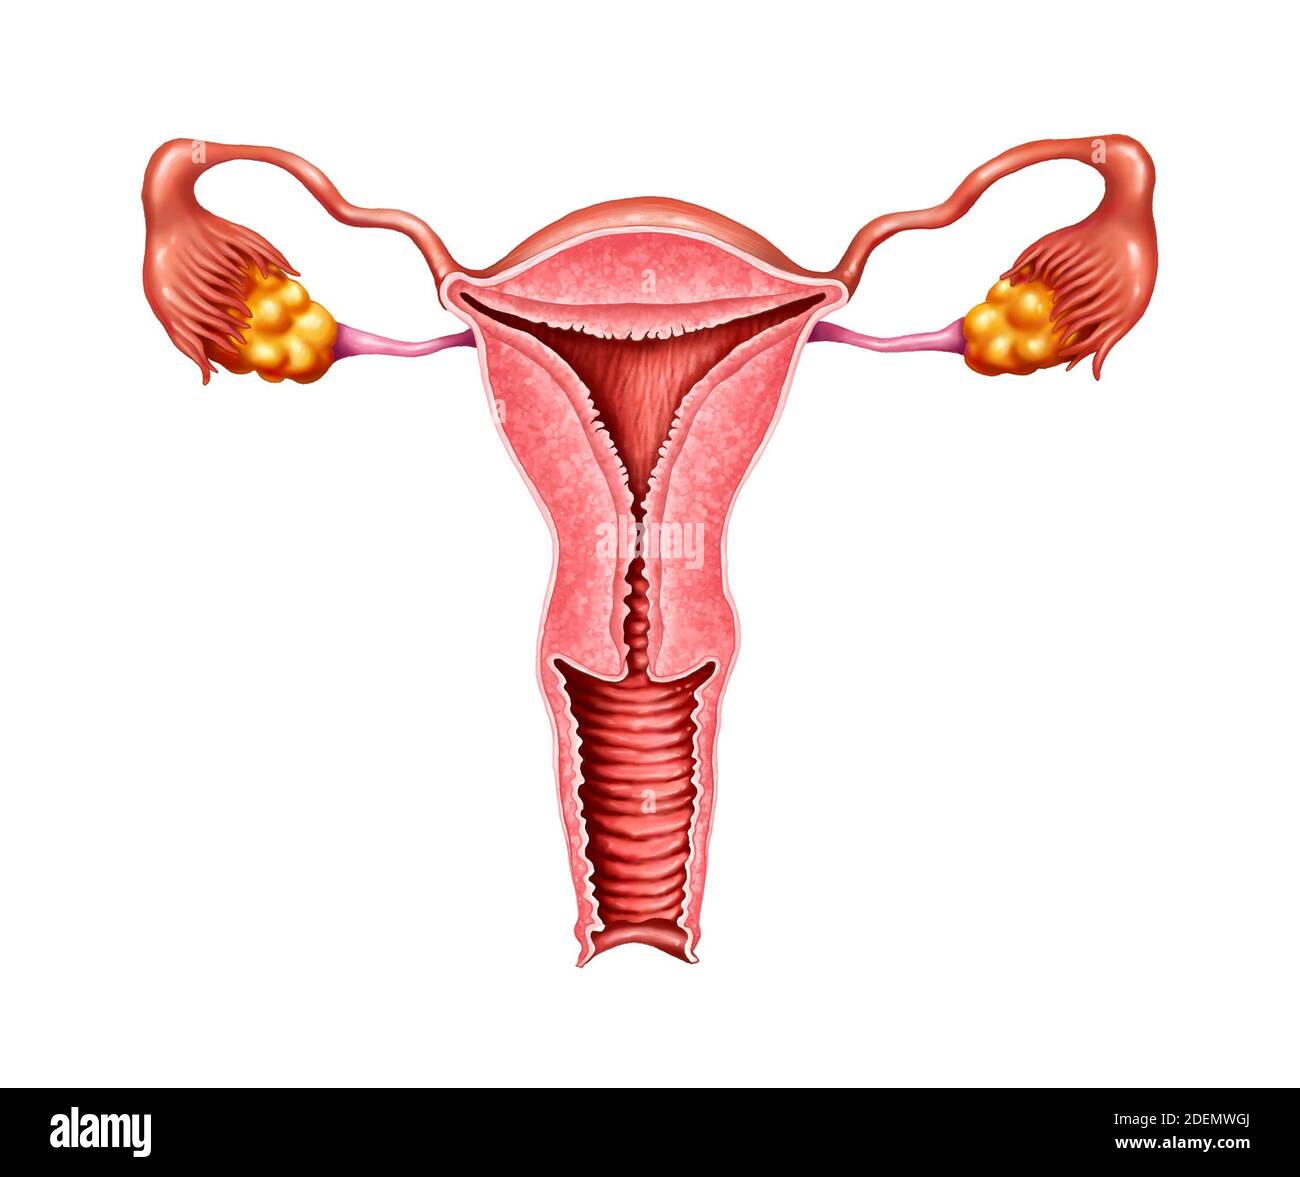 illustrazioni anatomiche dell'utero Foto Stock